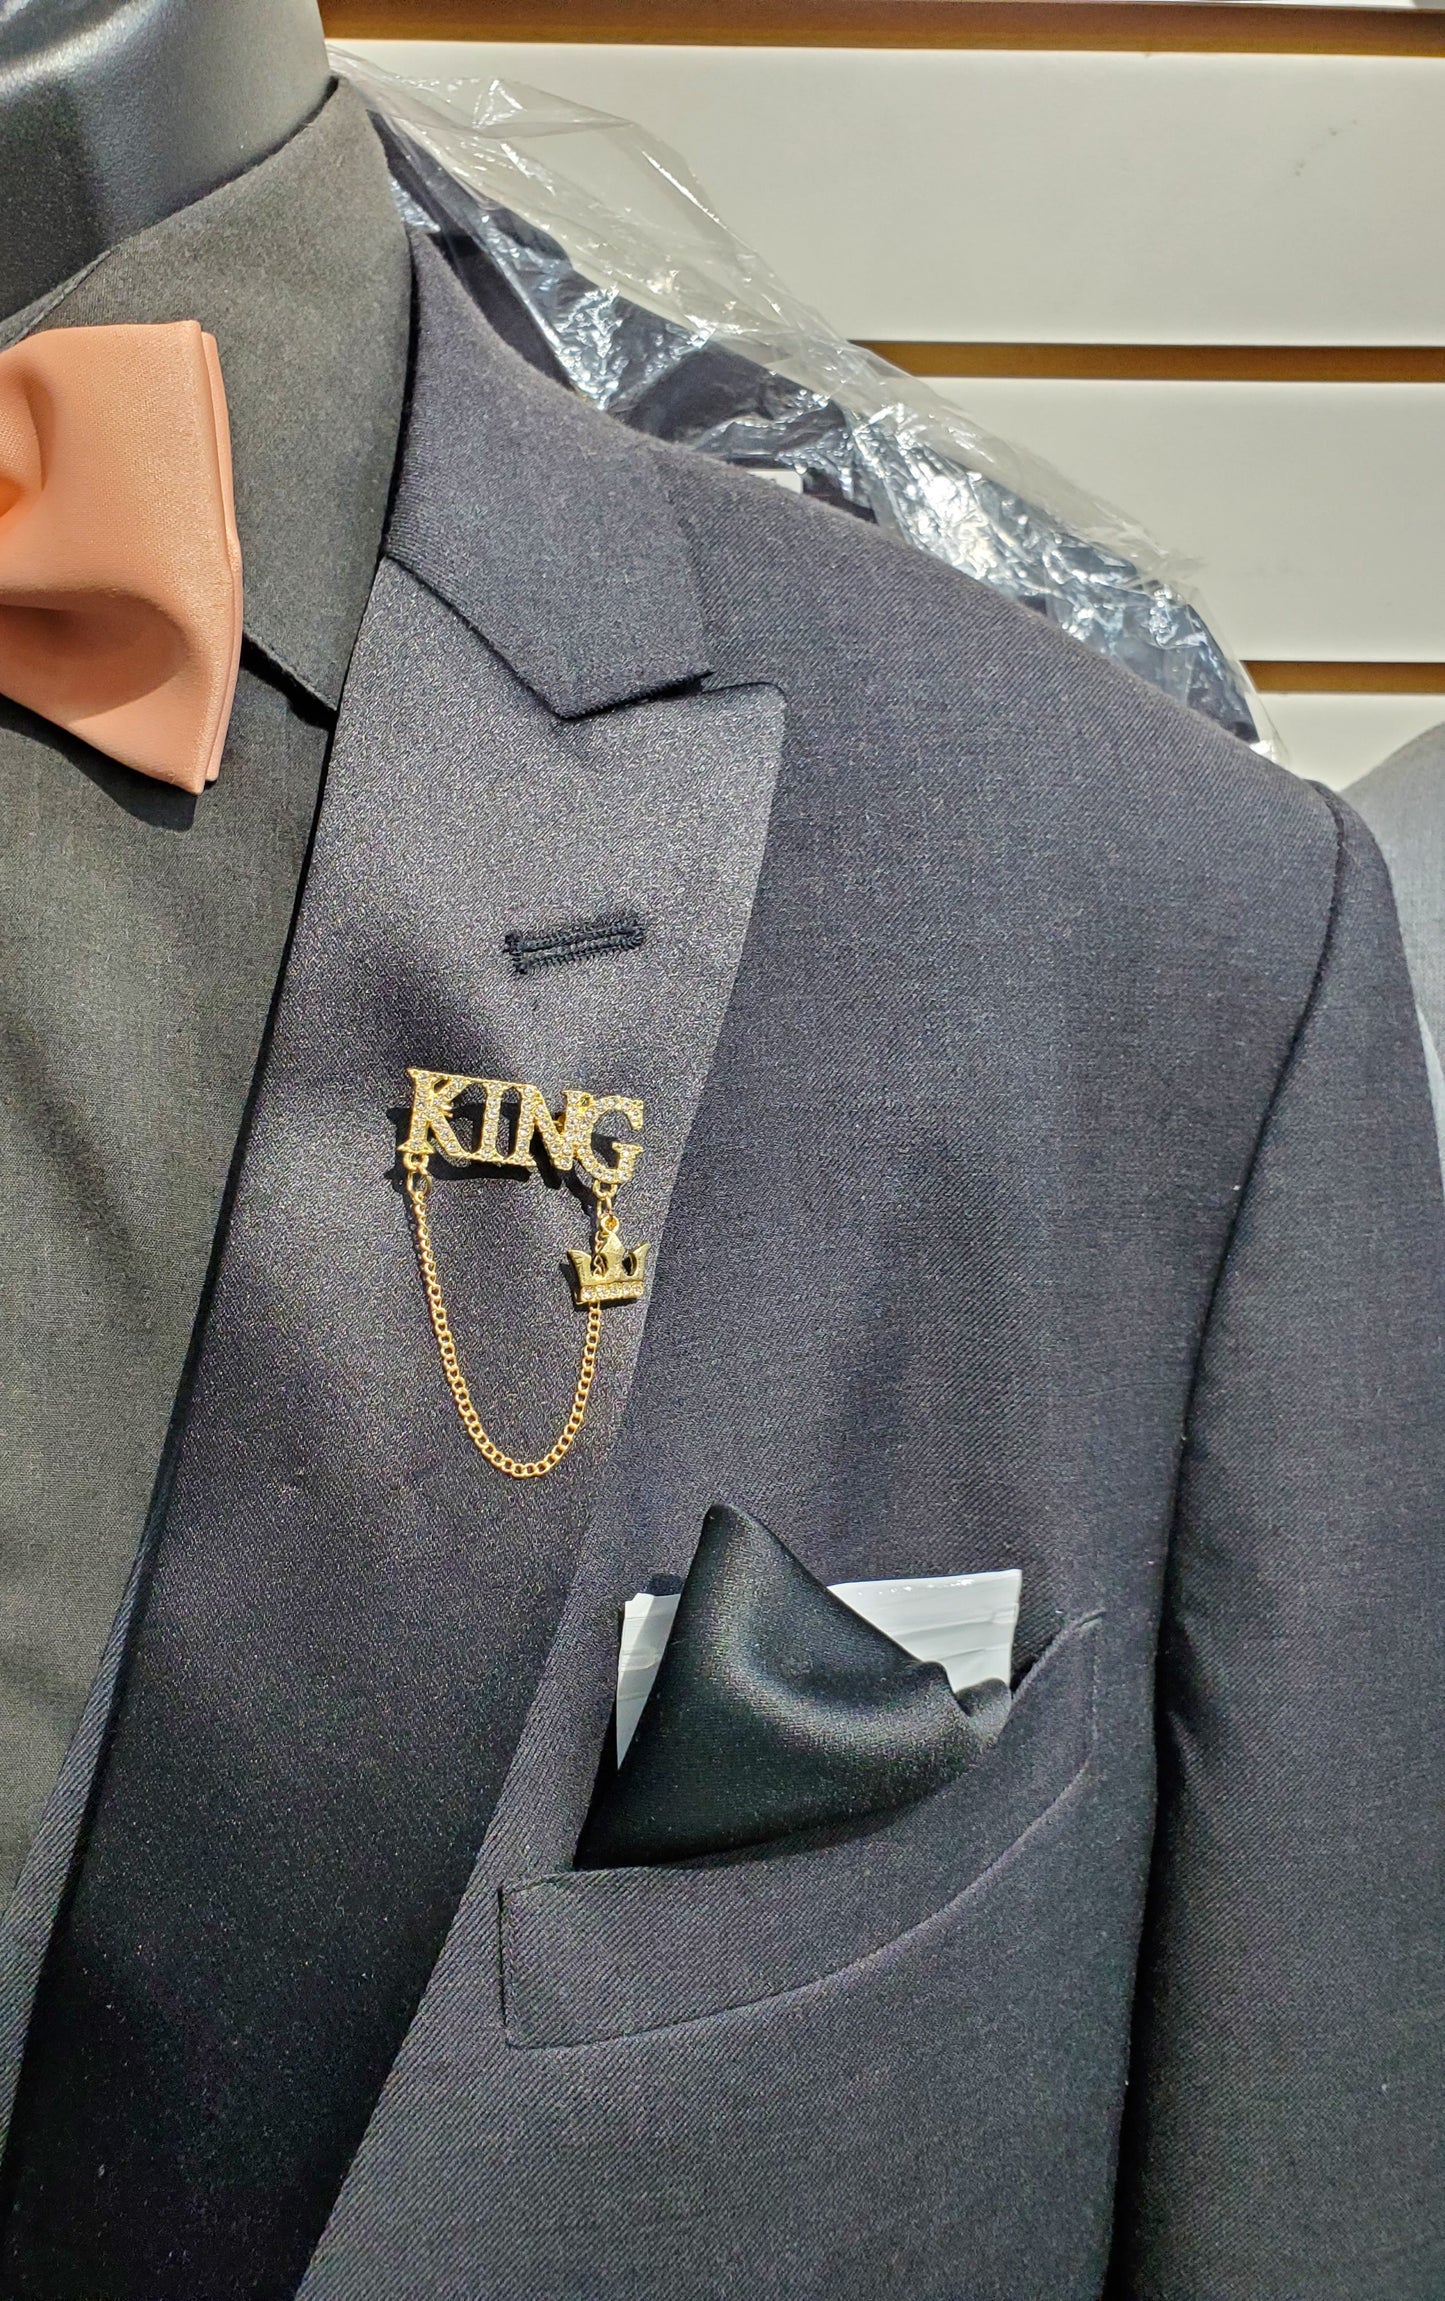 Long Chain / King Pin